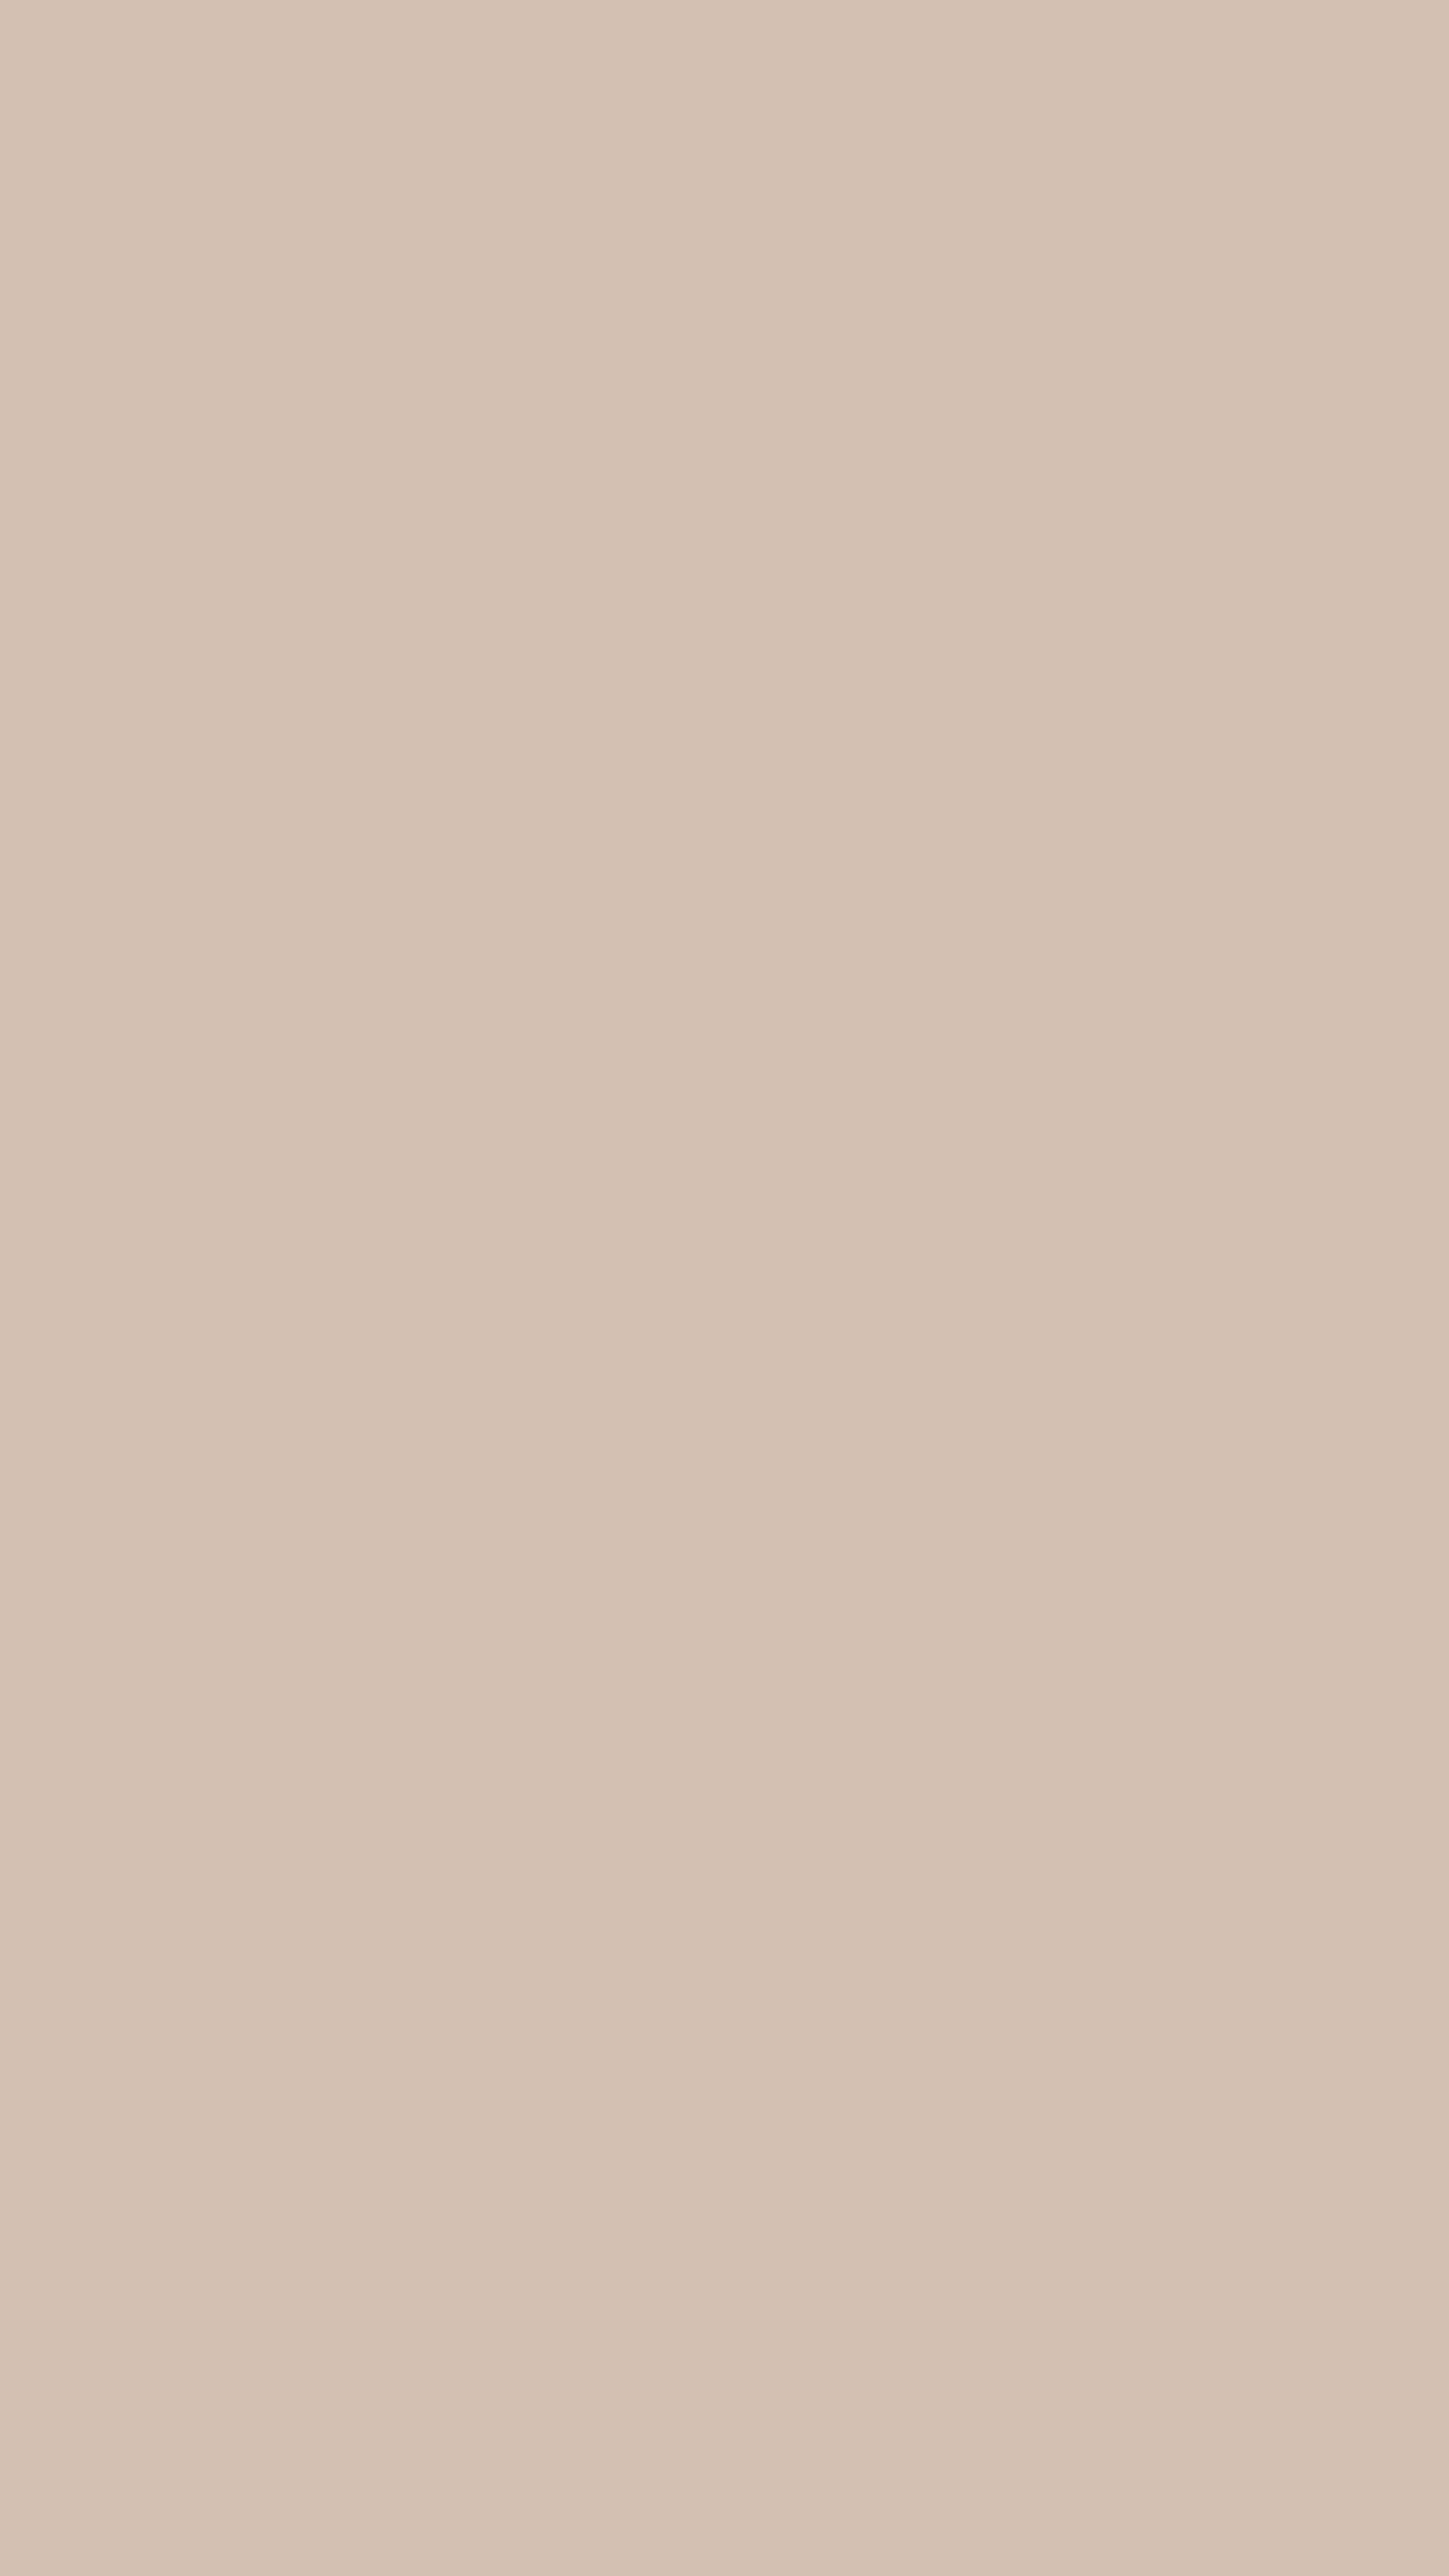 Simple Peachy Pink Color Background Sfondo[188fdbae16fe4c1ea916]